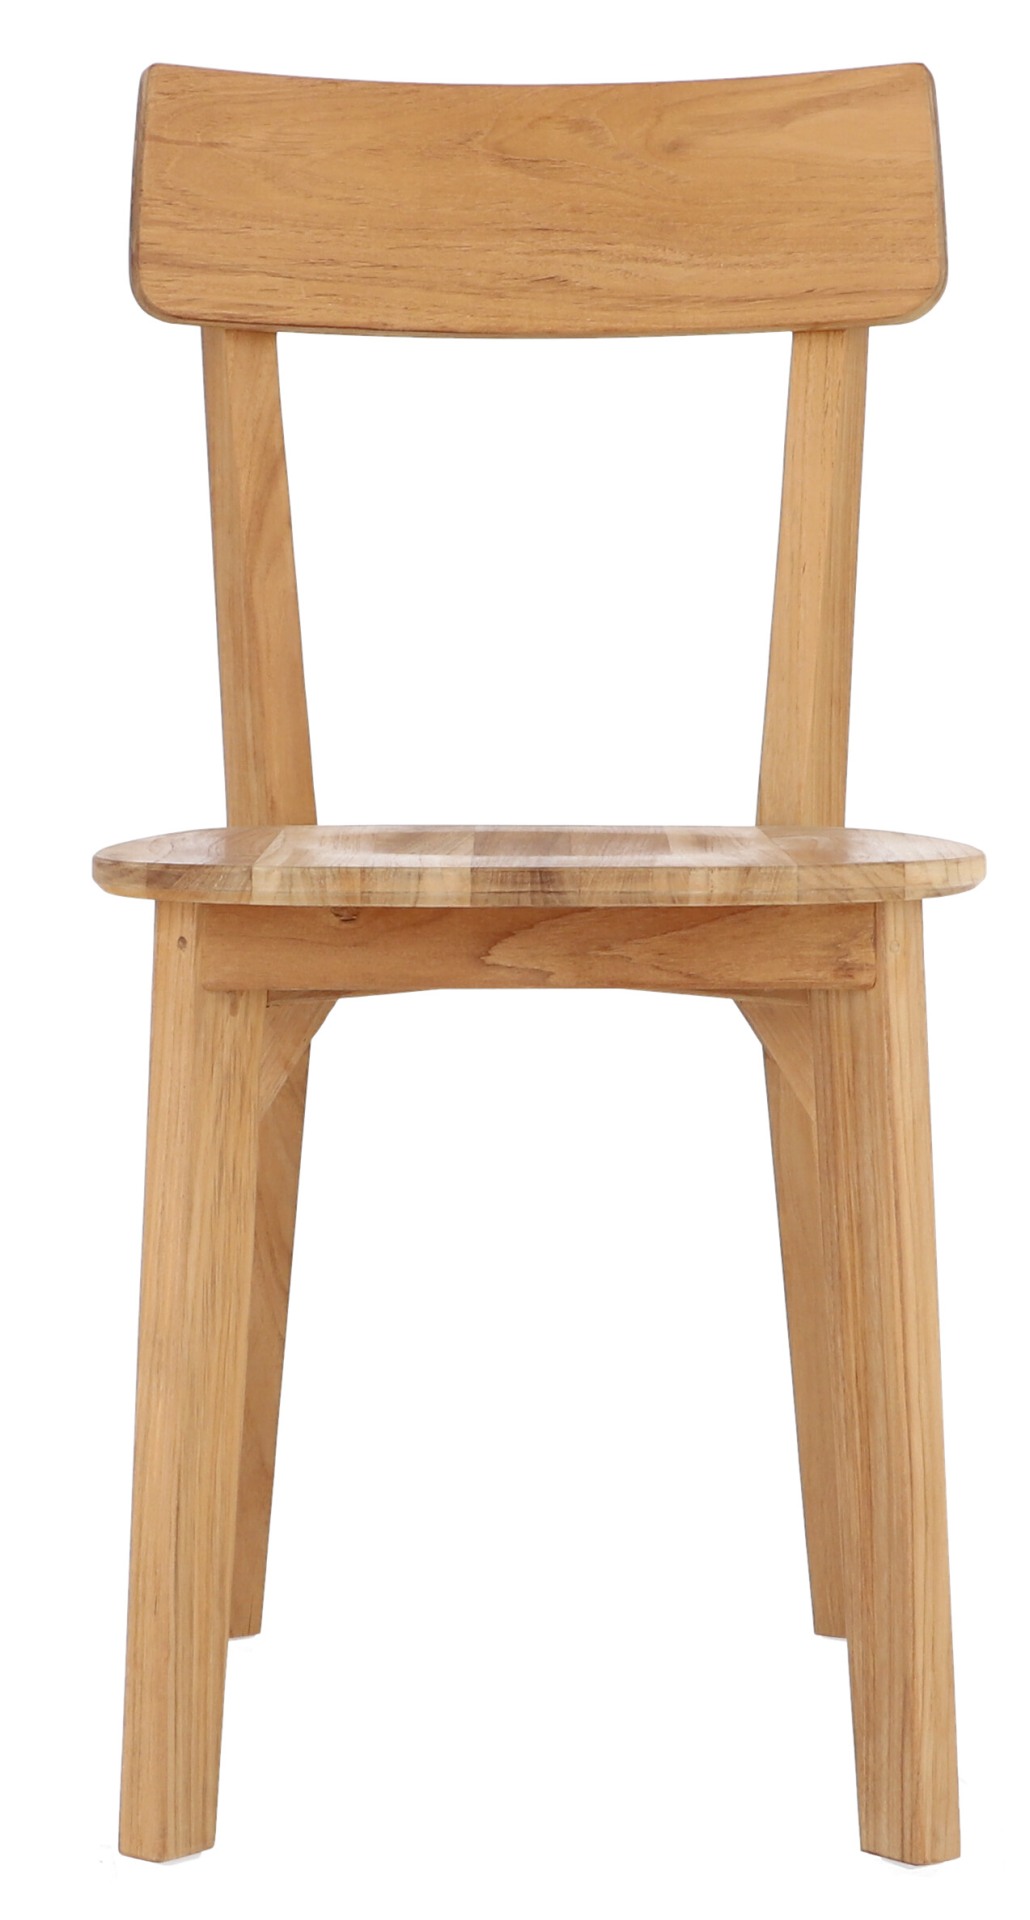 Gefertigt wurde der Stuhl Nea aus Teakholz und hat dadurch ein natürliches aber auch schlichtes Design. Er ist ein Produkt der Marke Jan Kurtz.